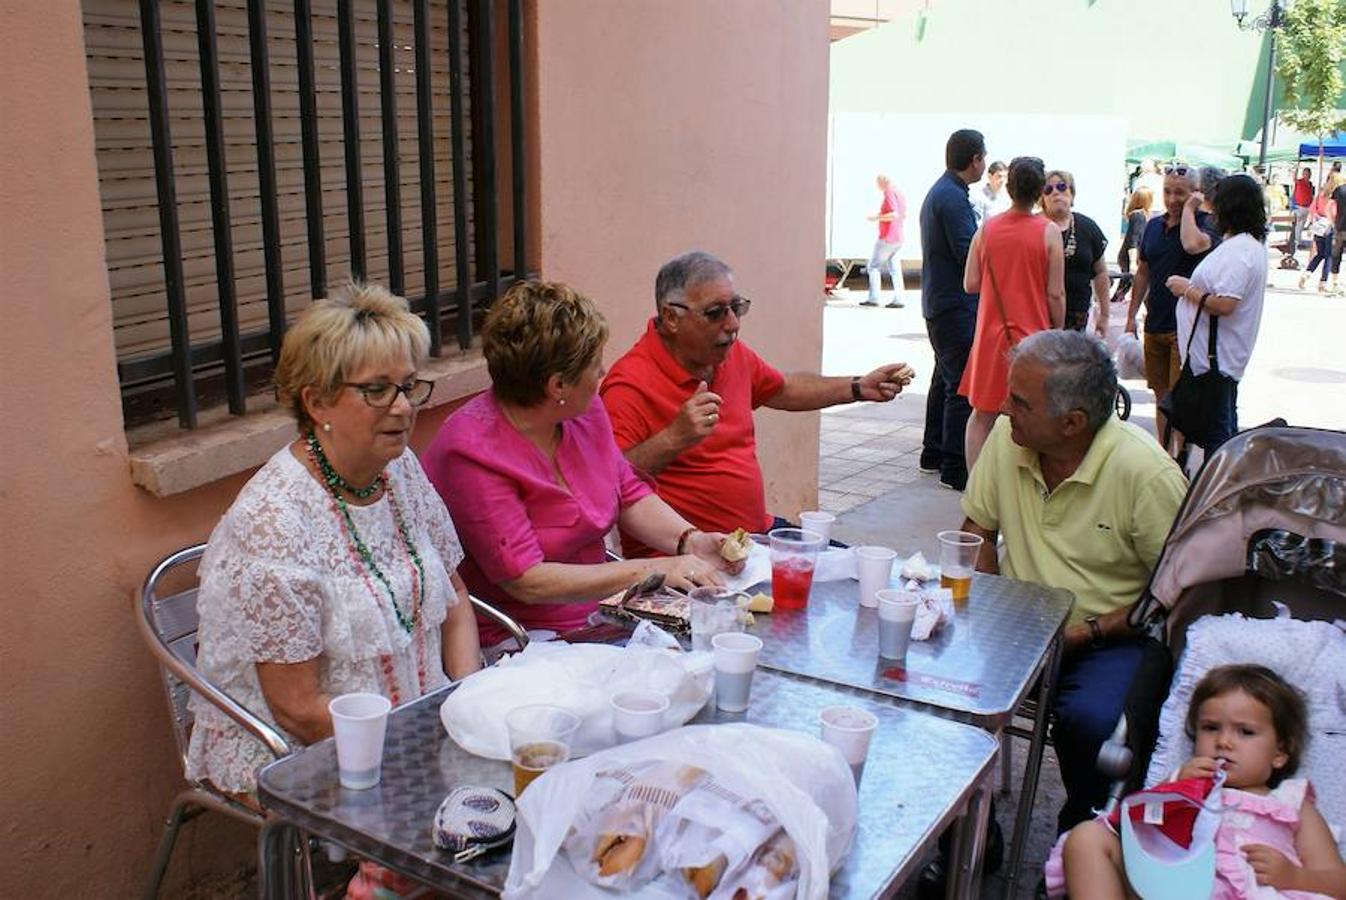 Más de 1.200 personas disfrutaron del festival del jamón con pimientos fritos que ha organizado Cárdenas con motivo del día grande de sus fiestas patronales y que este lunes finalizan con el entierro de la cuba y la quema del gitanillo.